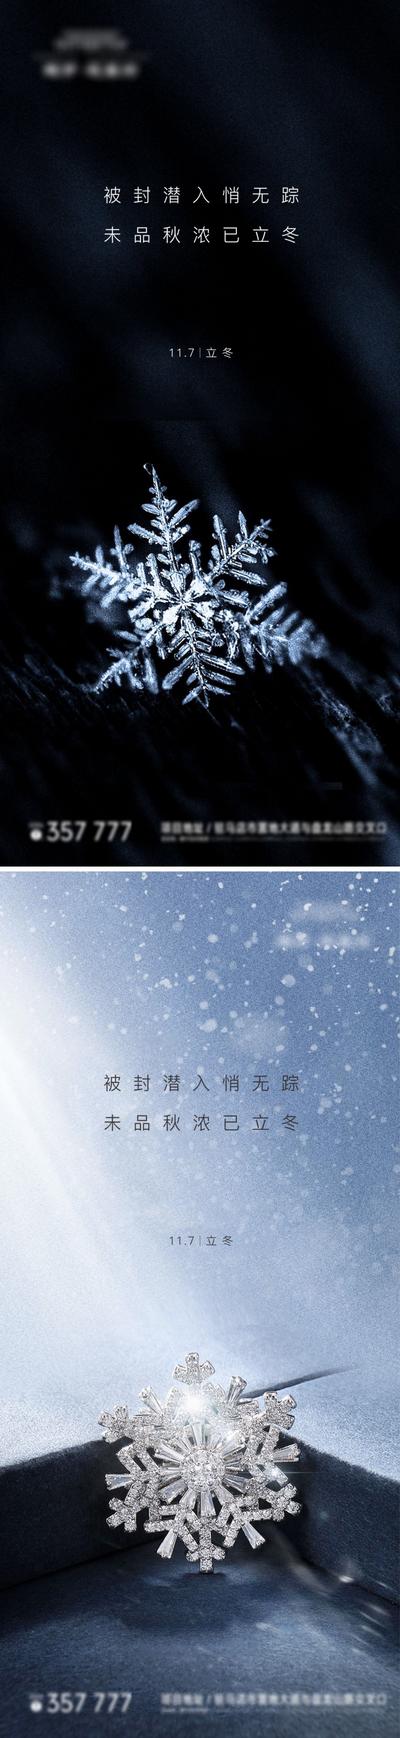 南门网  海报  房地产  系列  立冬   二十四节气  雪花  简约